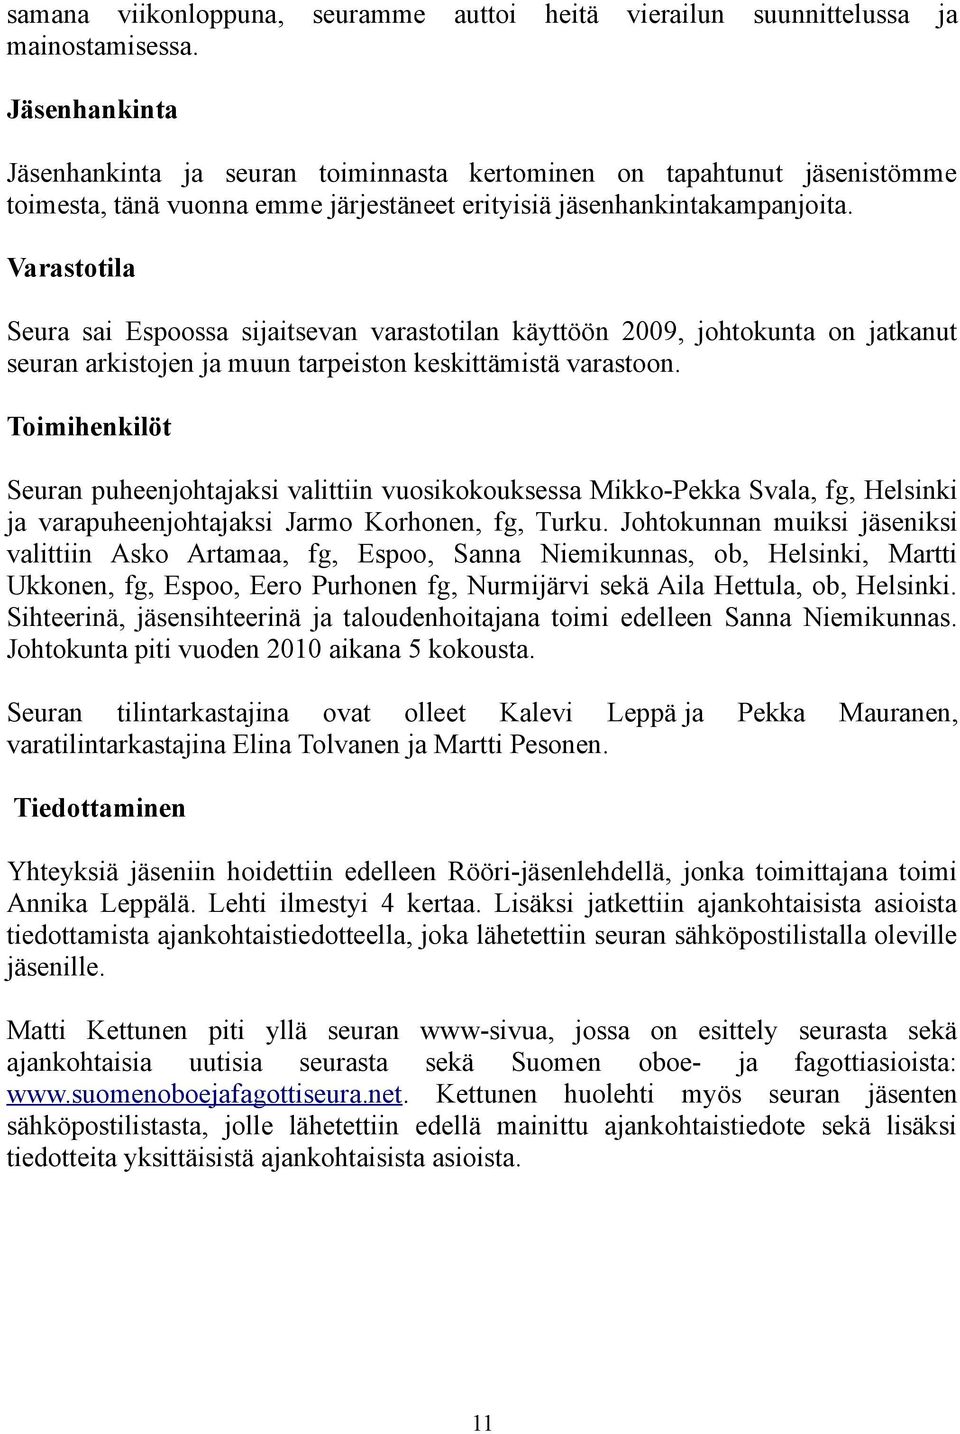 jäsenhankintakampanjoita. Varastotila Seura sai Espoossa sijaitsevan varastotilan käyttöön 2009, johtokunta on jatkanut seuran arkistojen ja muun tarpeiston keskittämistä varastoon.